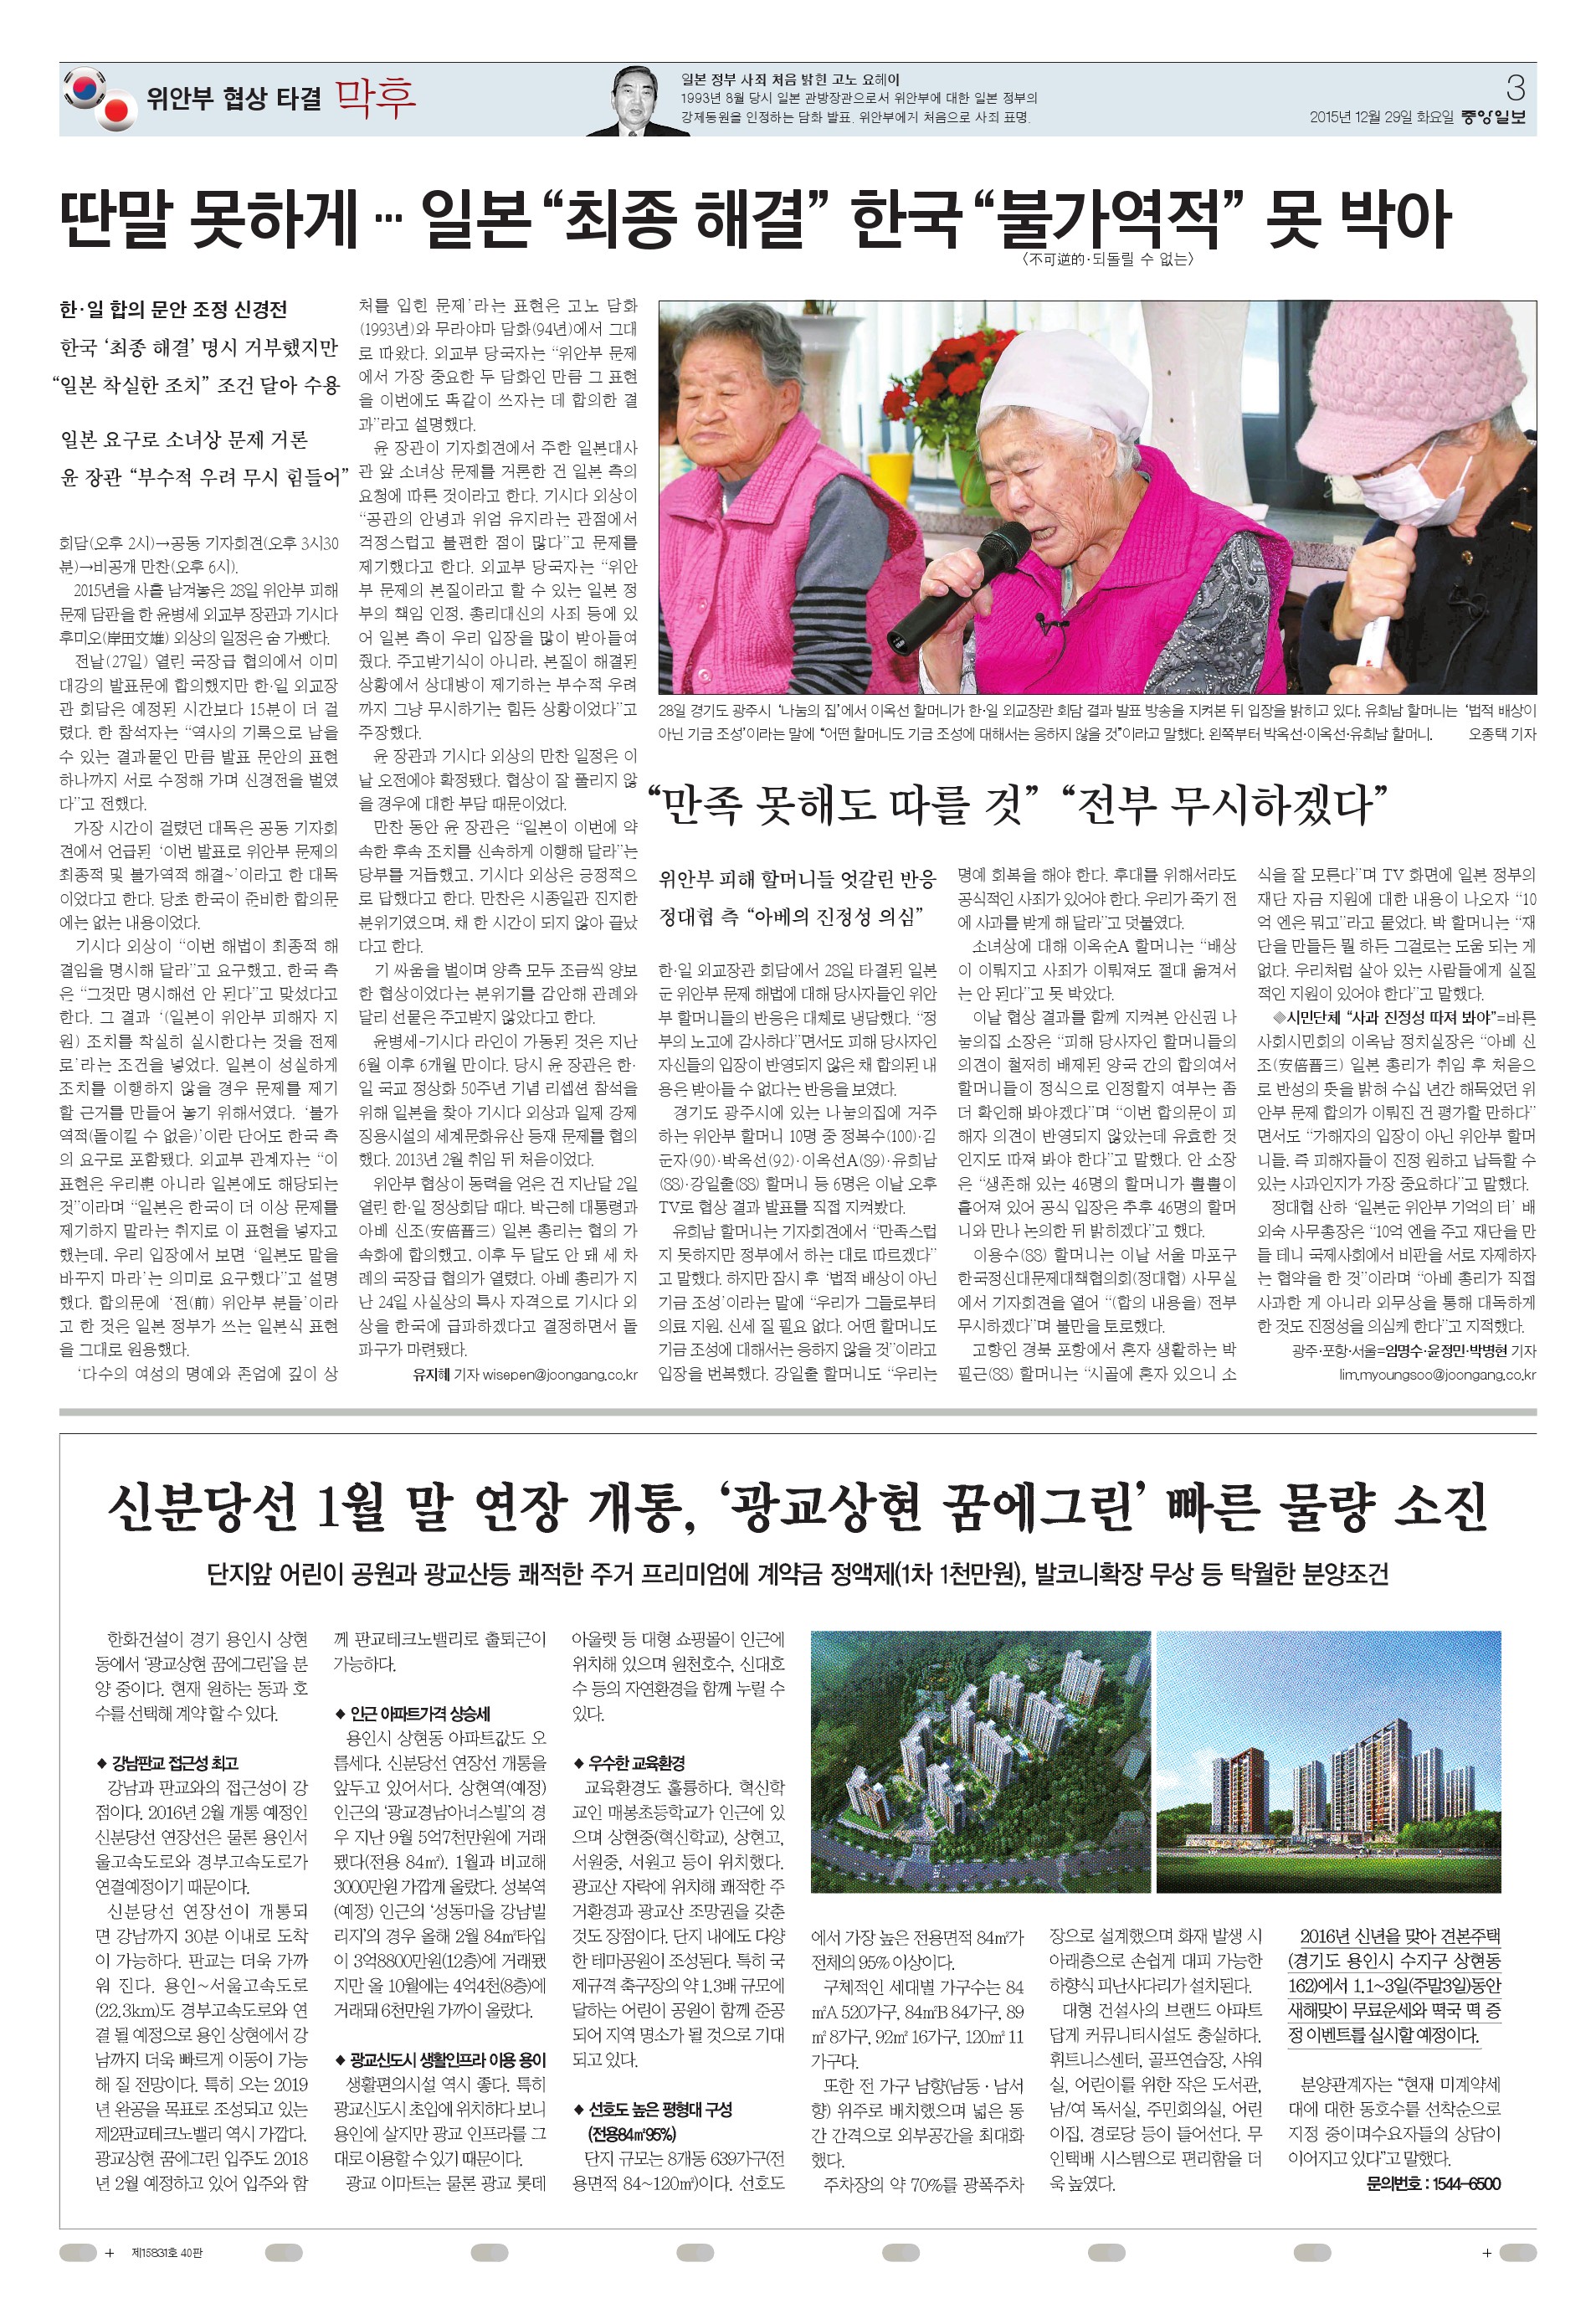 151229 중앙일보 3면 광교상현 꿈에그린-1.jpg